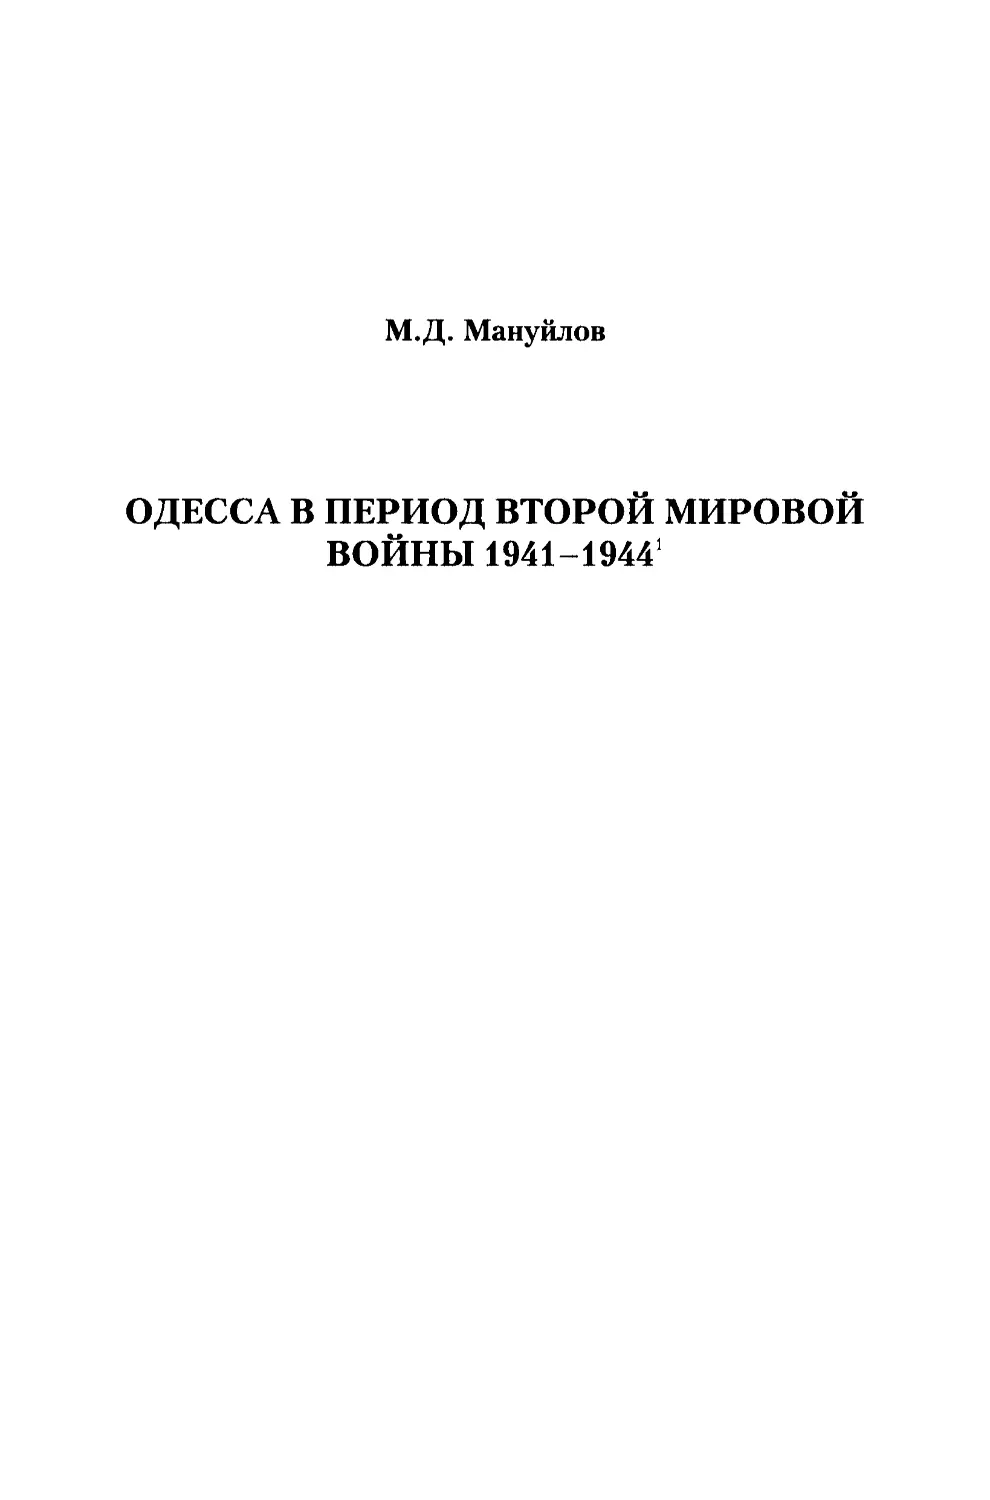 М.Д. Мануйлов. Одесса в период Второй мировой войны 1941-1944